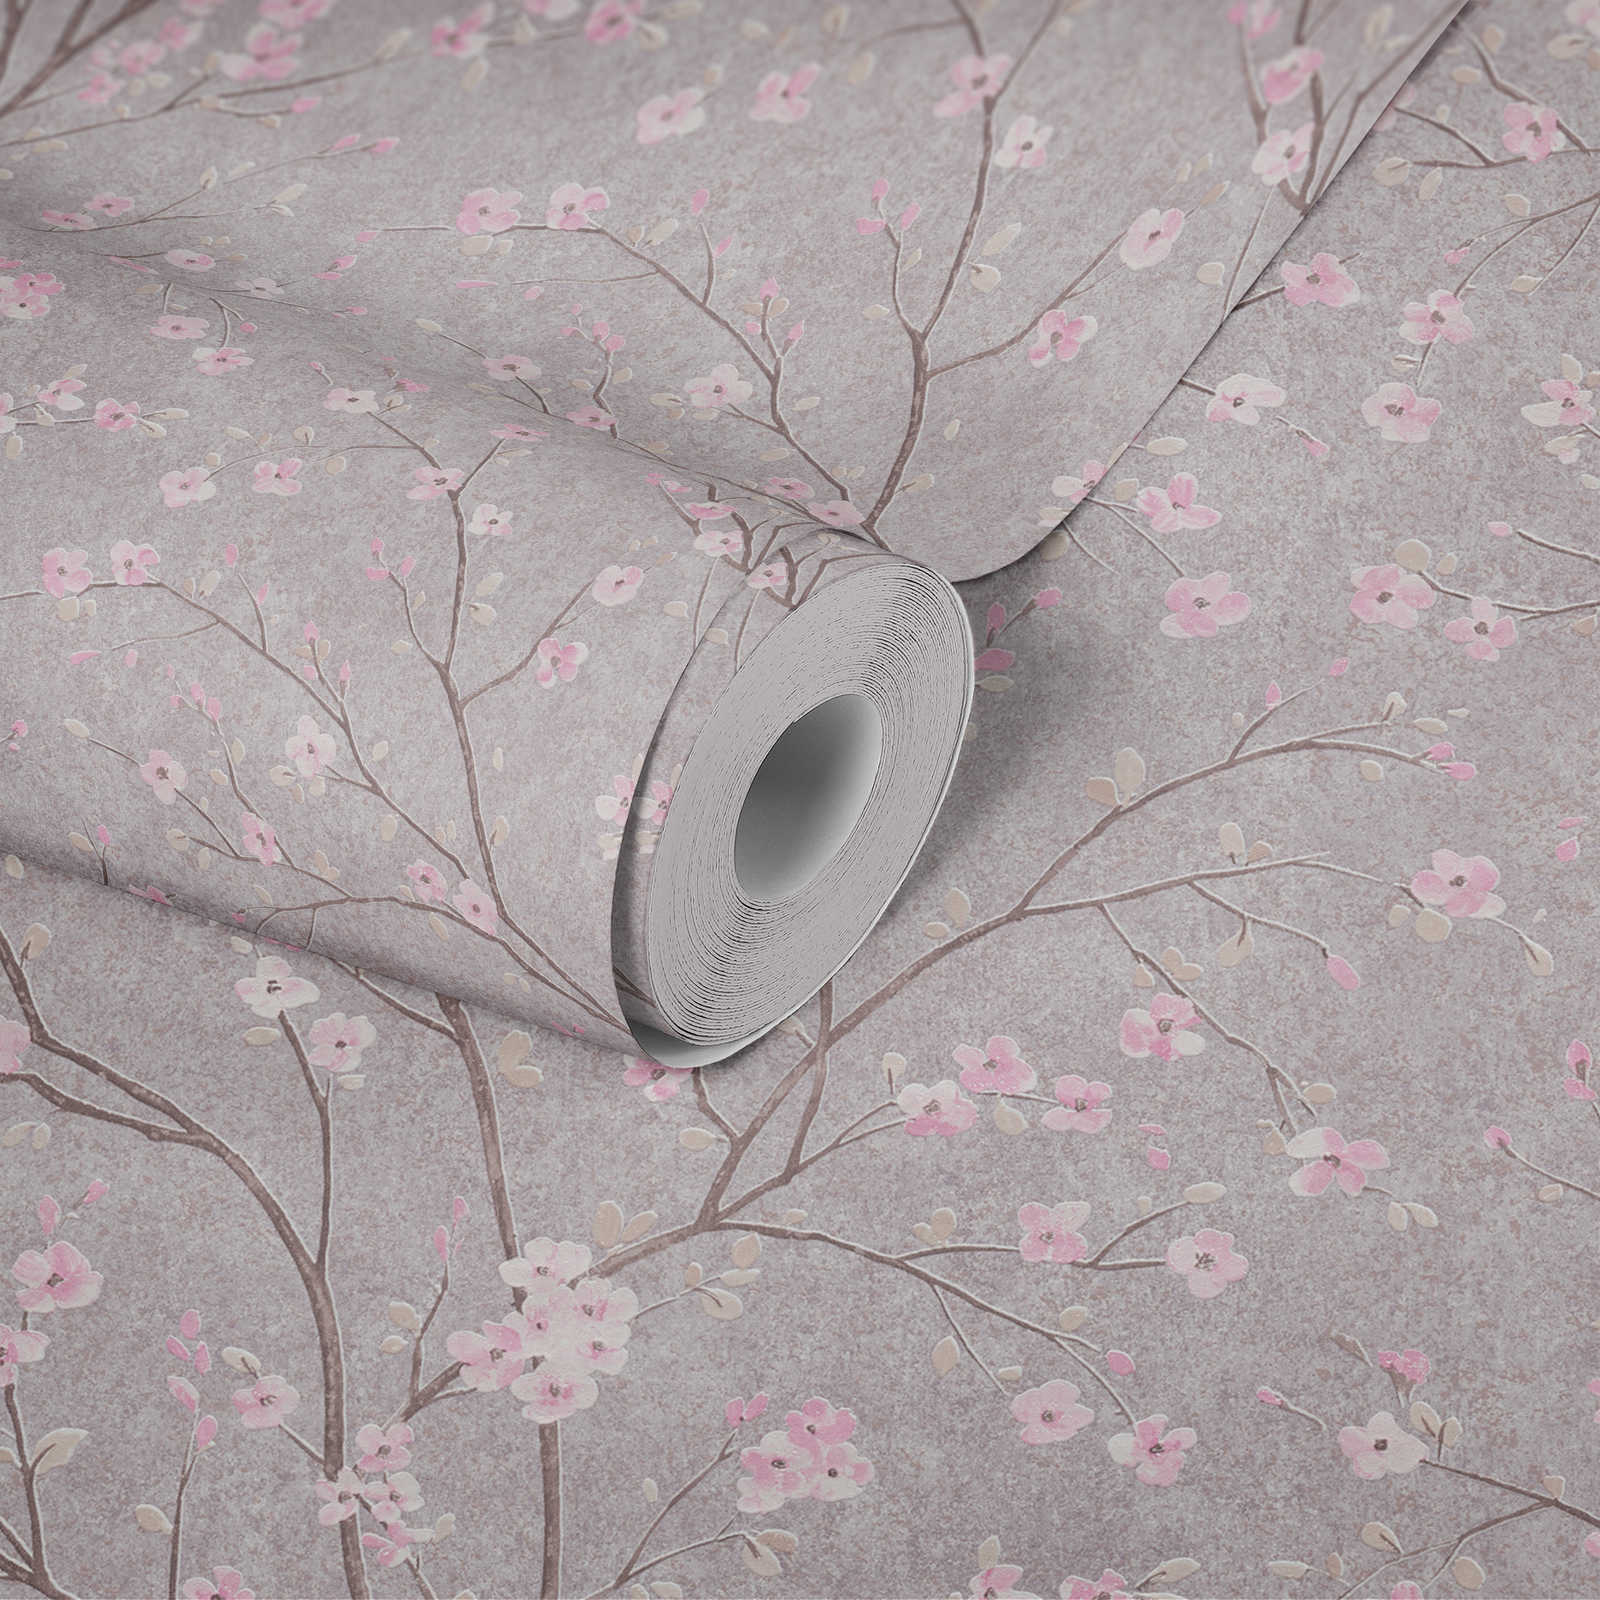             Behang in Aziatische stijl met kersenbloesemmotief - grijs, roze
        